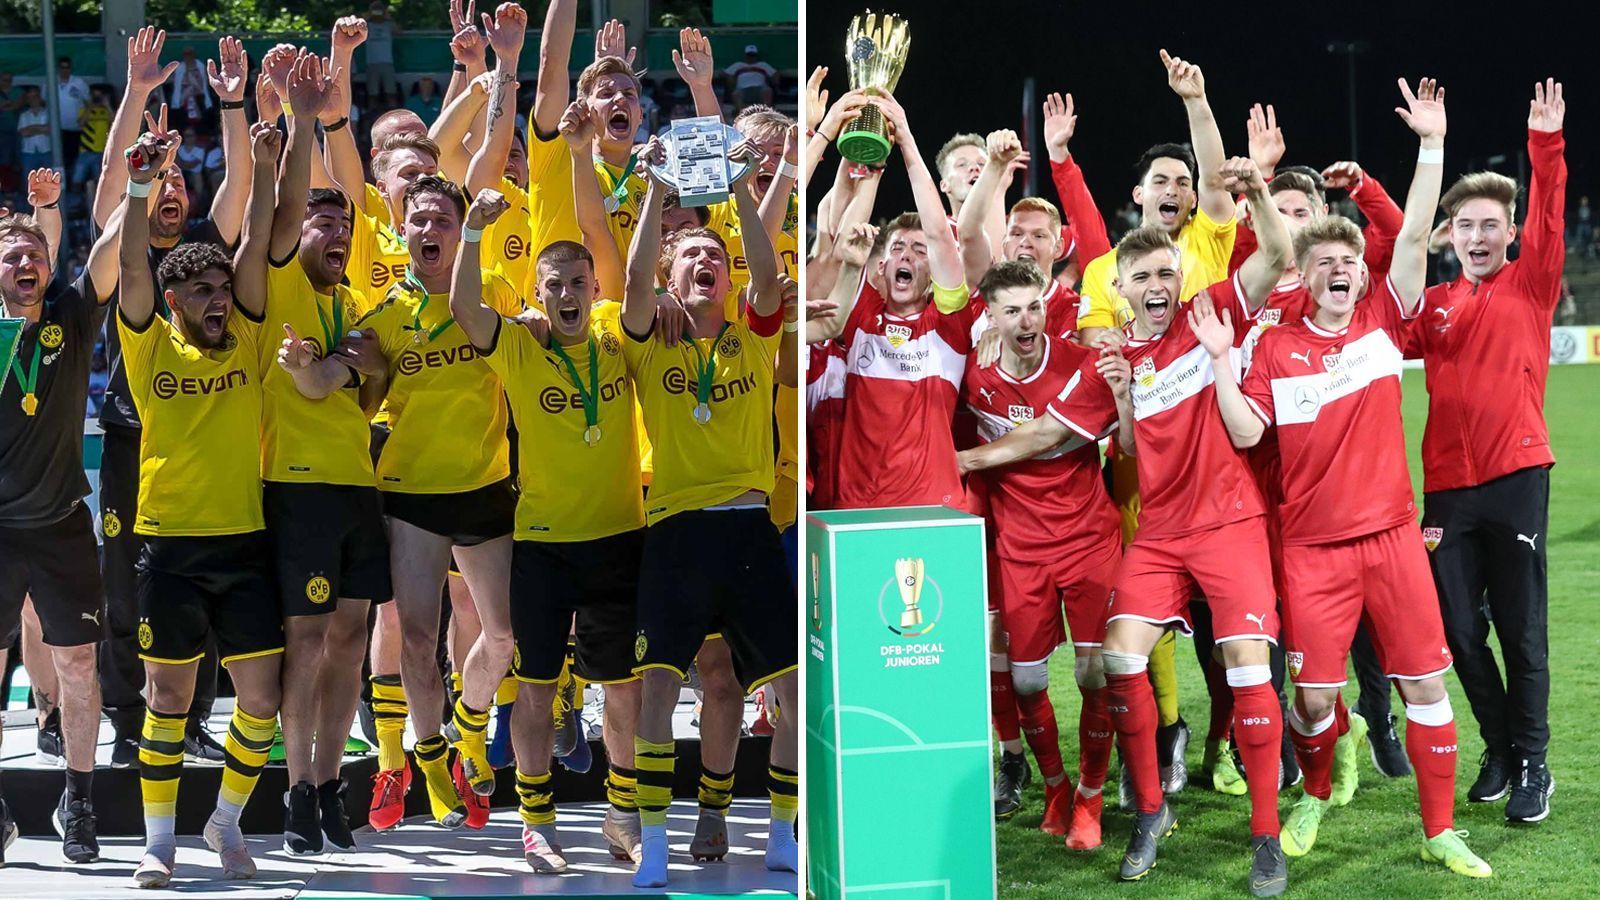 
                <strong>Die Top-Talente von Dortmund und Stuttgart</strong><br>
                Die U-19-Mannschaften vom Borussia Dortmund und VfB Stuttgart haben die A-Junioren-Bundesliga dominiert. Die beiden Mannschaften trafen im Finale um die Deutsche Meisterschaft aufeinander, wo sich der BVB mit 5:3 durchsetzen konnte. Dafür wurde der VfB Deutscher A-Junioren-Pokalsieger. Die Top-Talente möchten sich nun auch bei den Profis durchsetzen. ran.de stellt die fünf vielversprechendsten Nachwuchsspieler beider Mannschaften vor.  
              